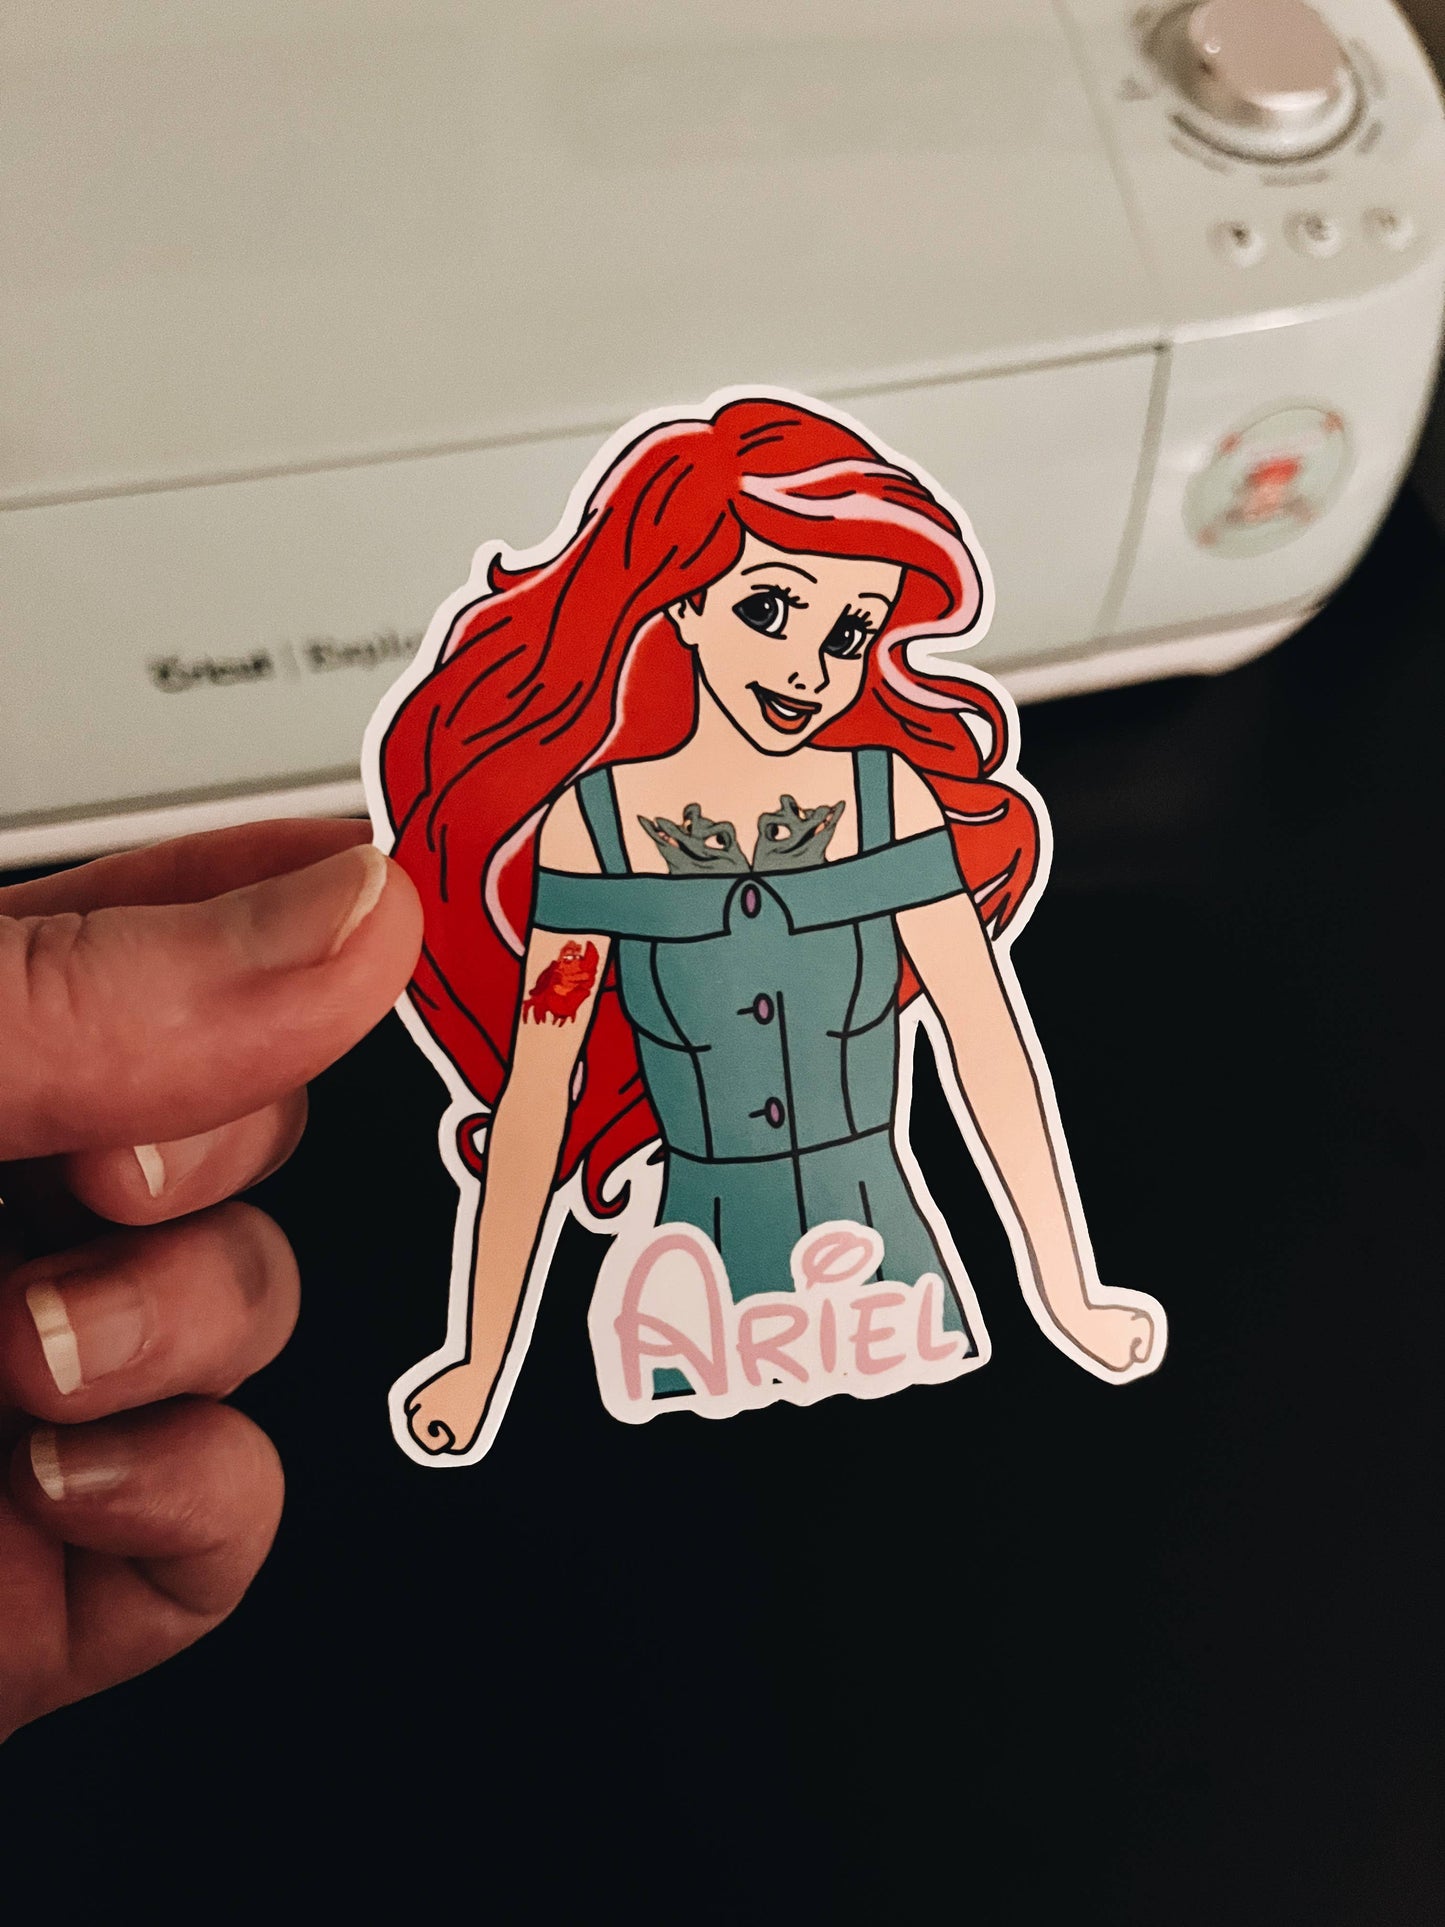 Ariel, Vinyl Sticker, Disney Princess